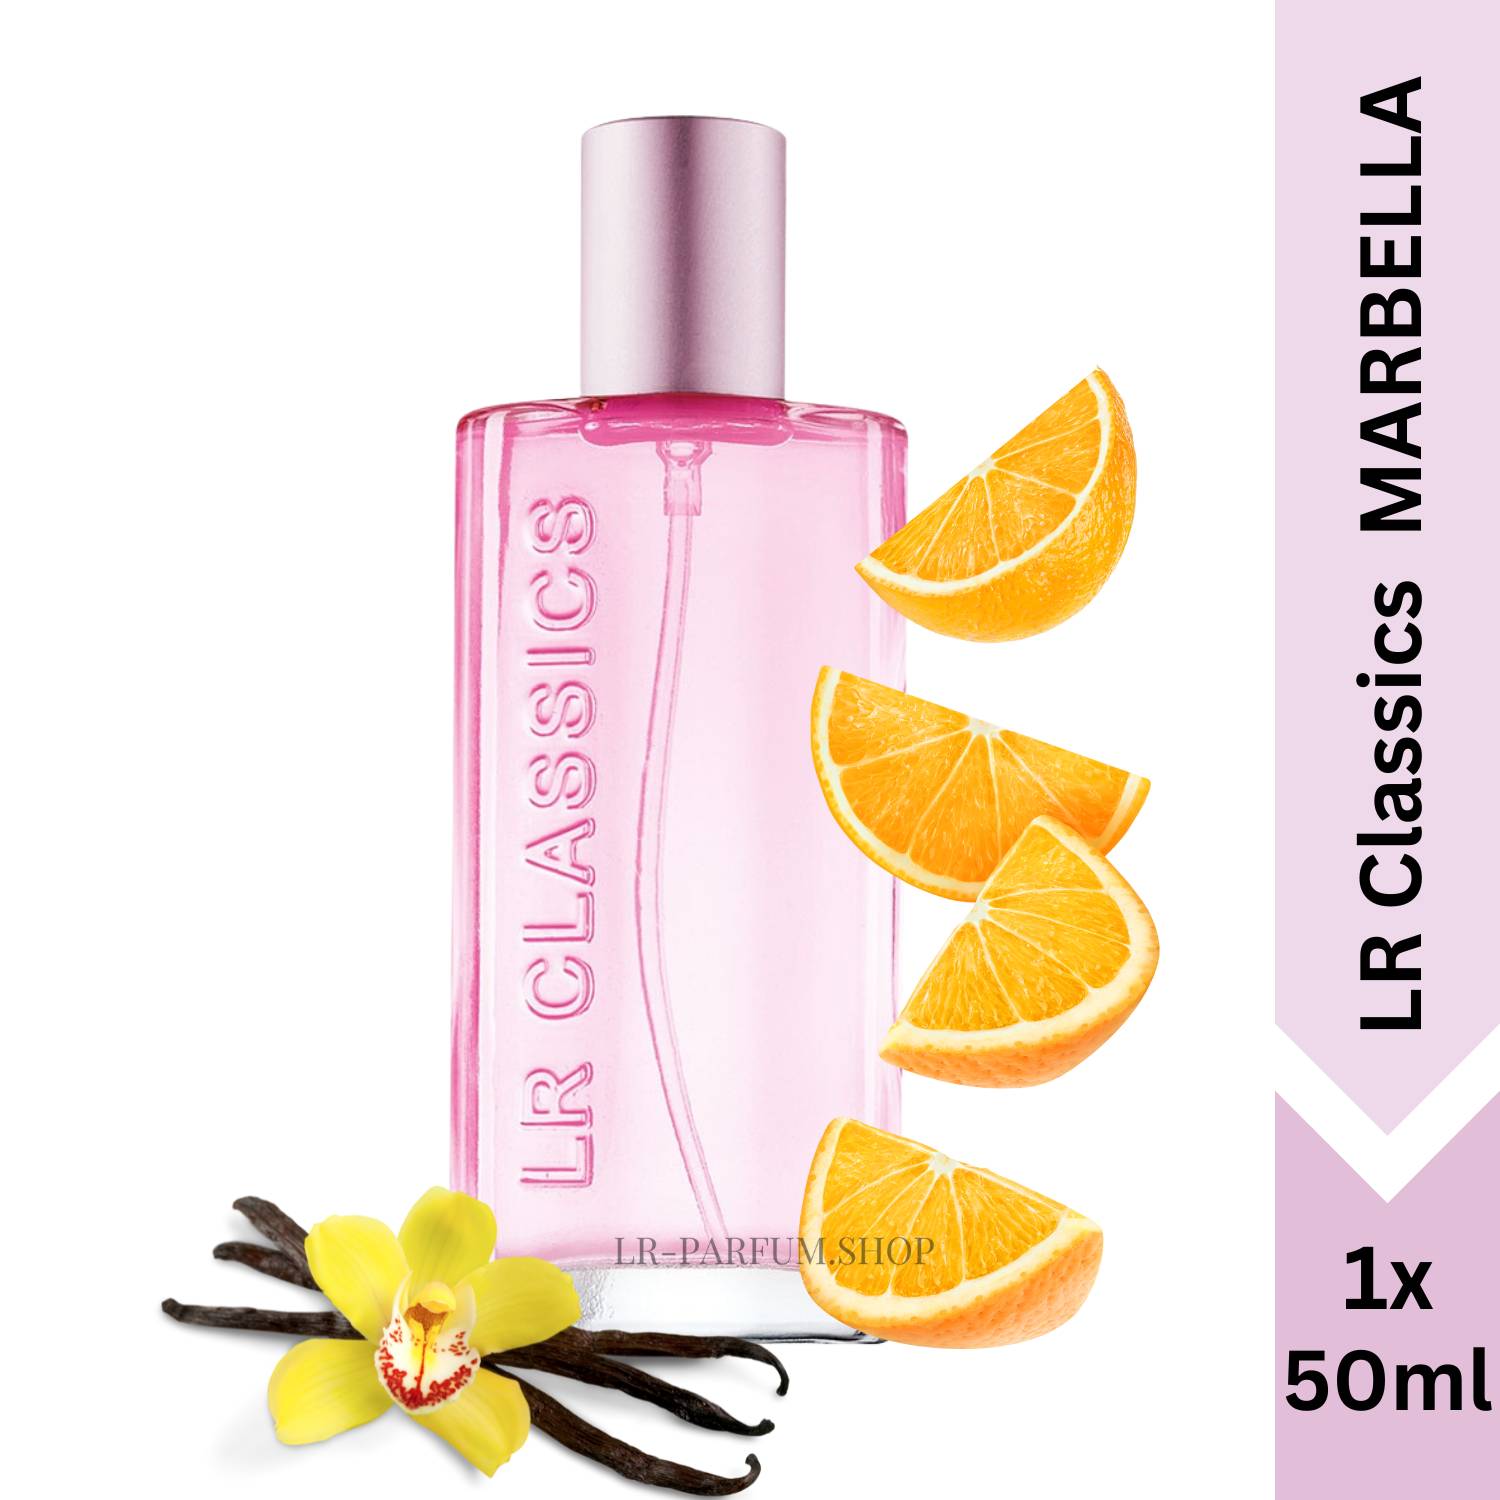 LR Classics Marbella - Eau de Parfum 50ml - LR-Parfum.shop